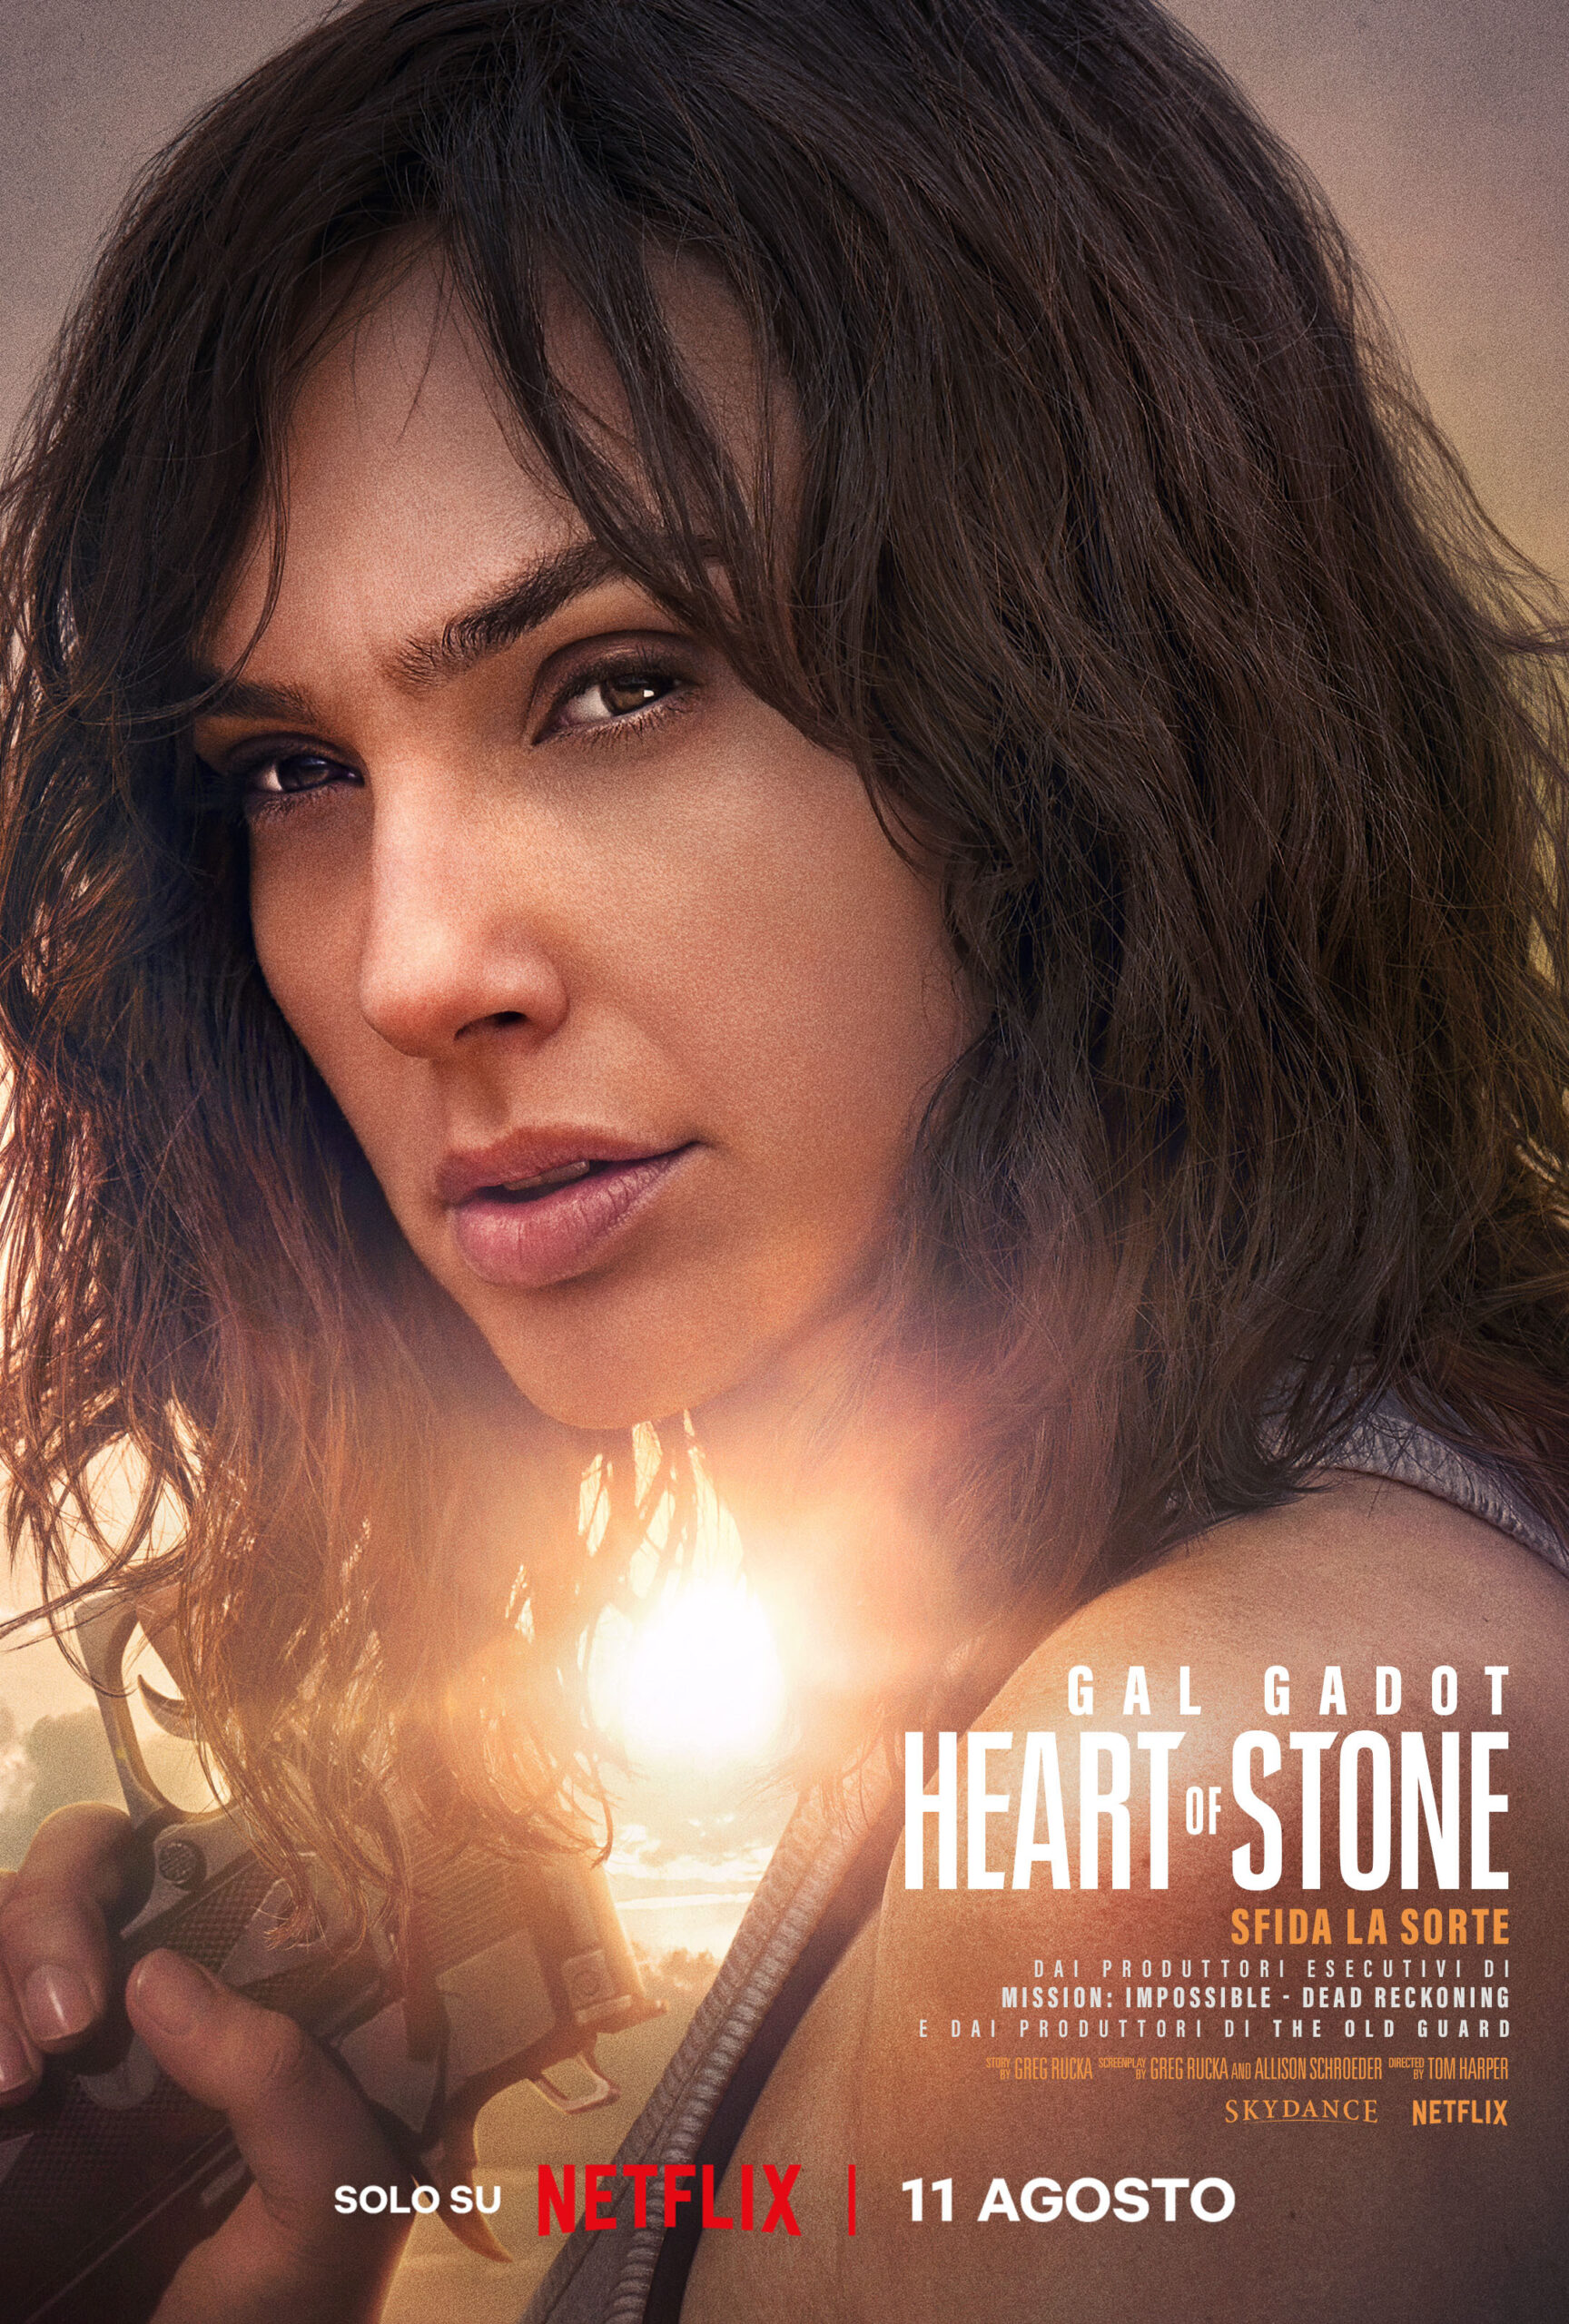 "Heart of Stone", il film con Gal Gadot in arrivo dall’11 agosto solo su Netflix